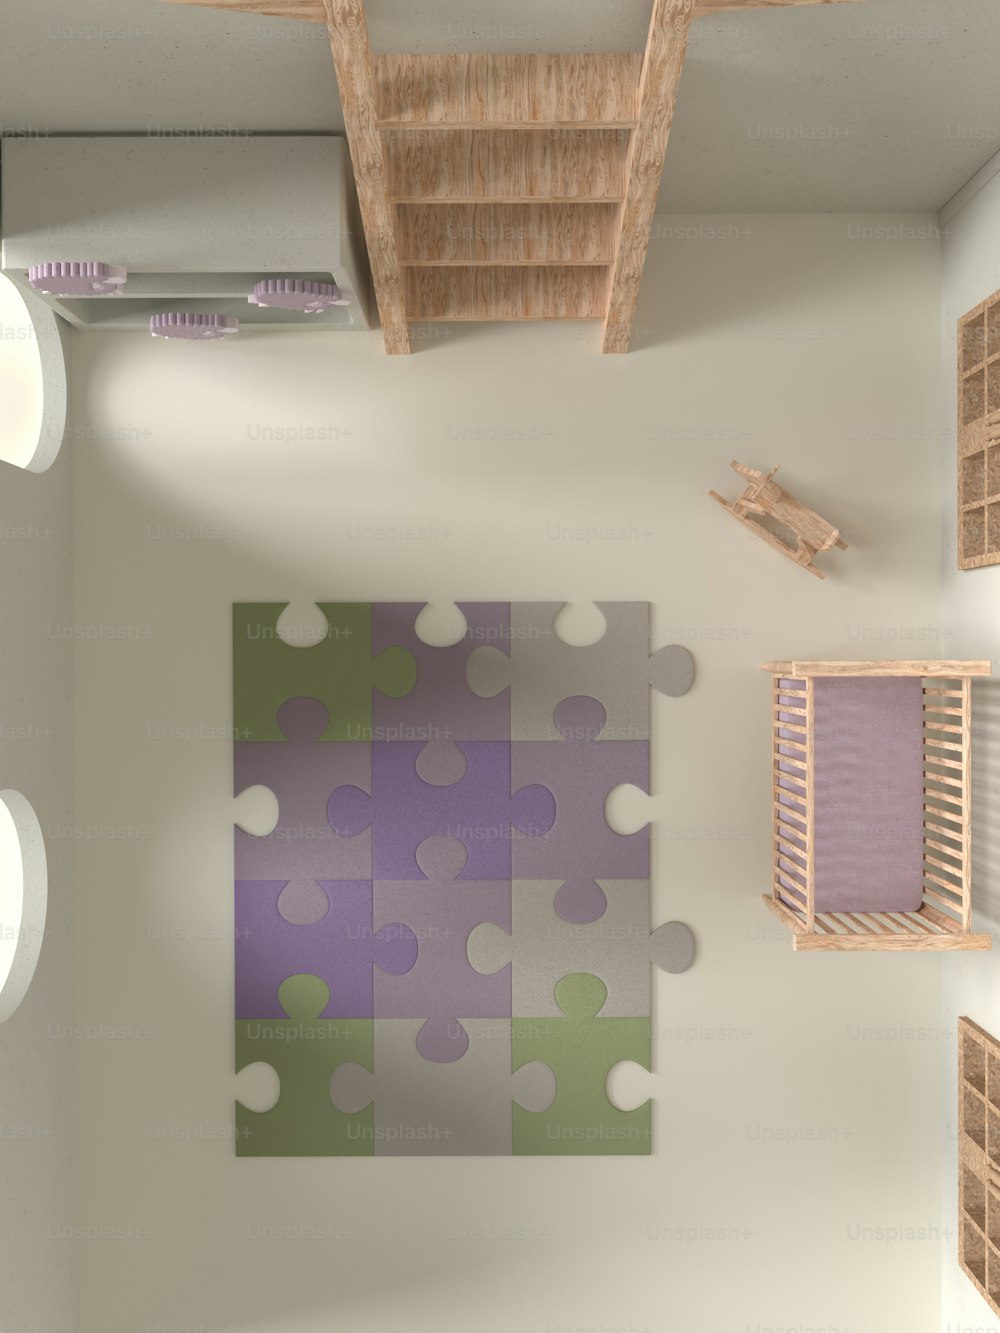 Una habitación con una pieza de rompecabezas púrpura y verde en la pared